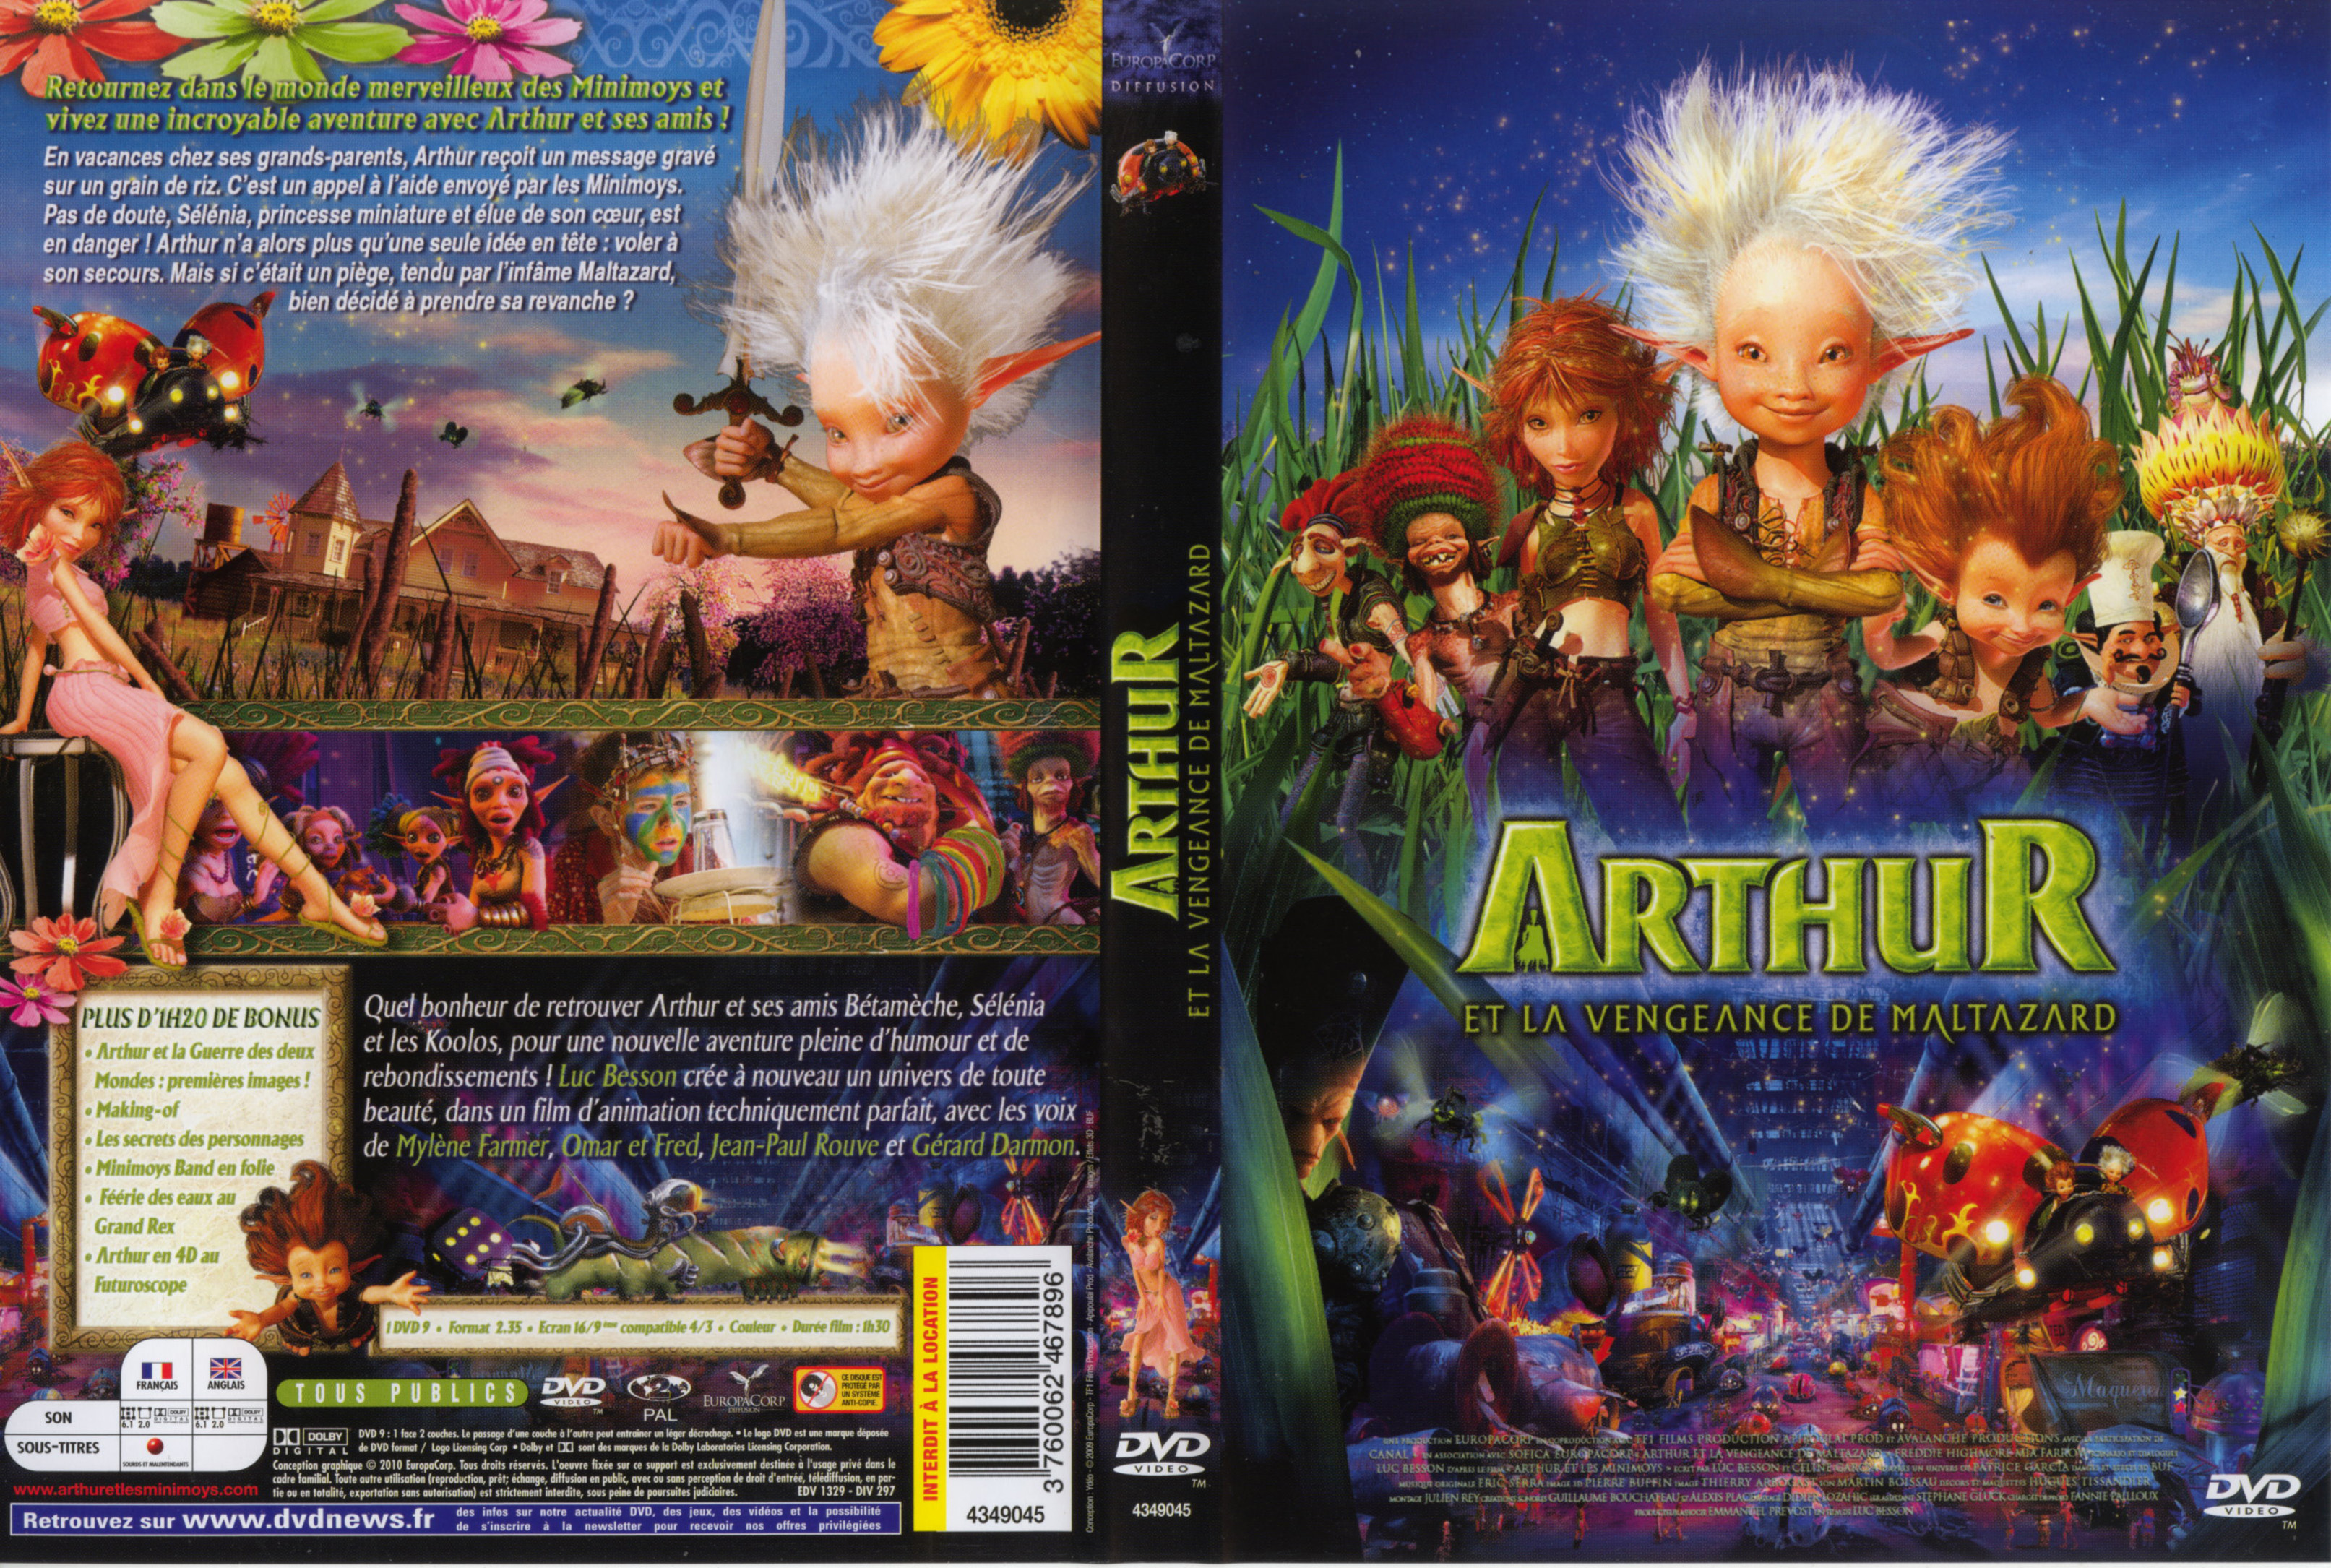 Jaquette DVD Arthur et la vengeance de Maltazard